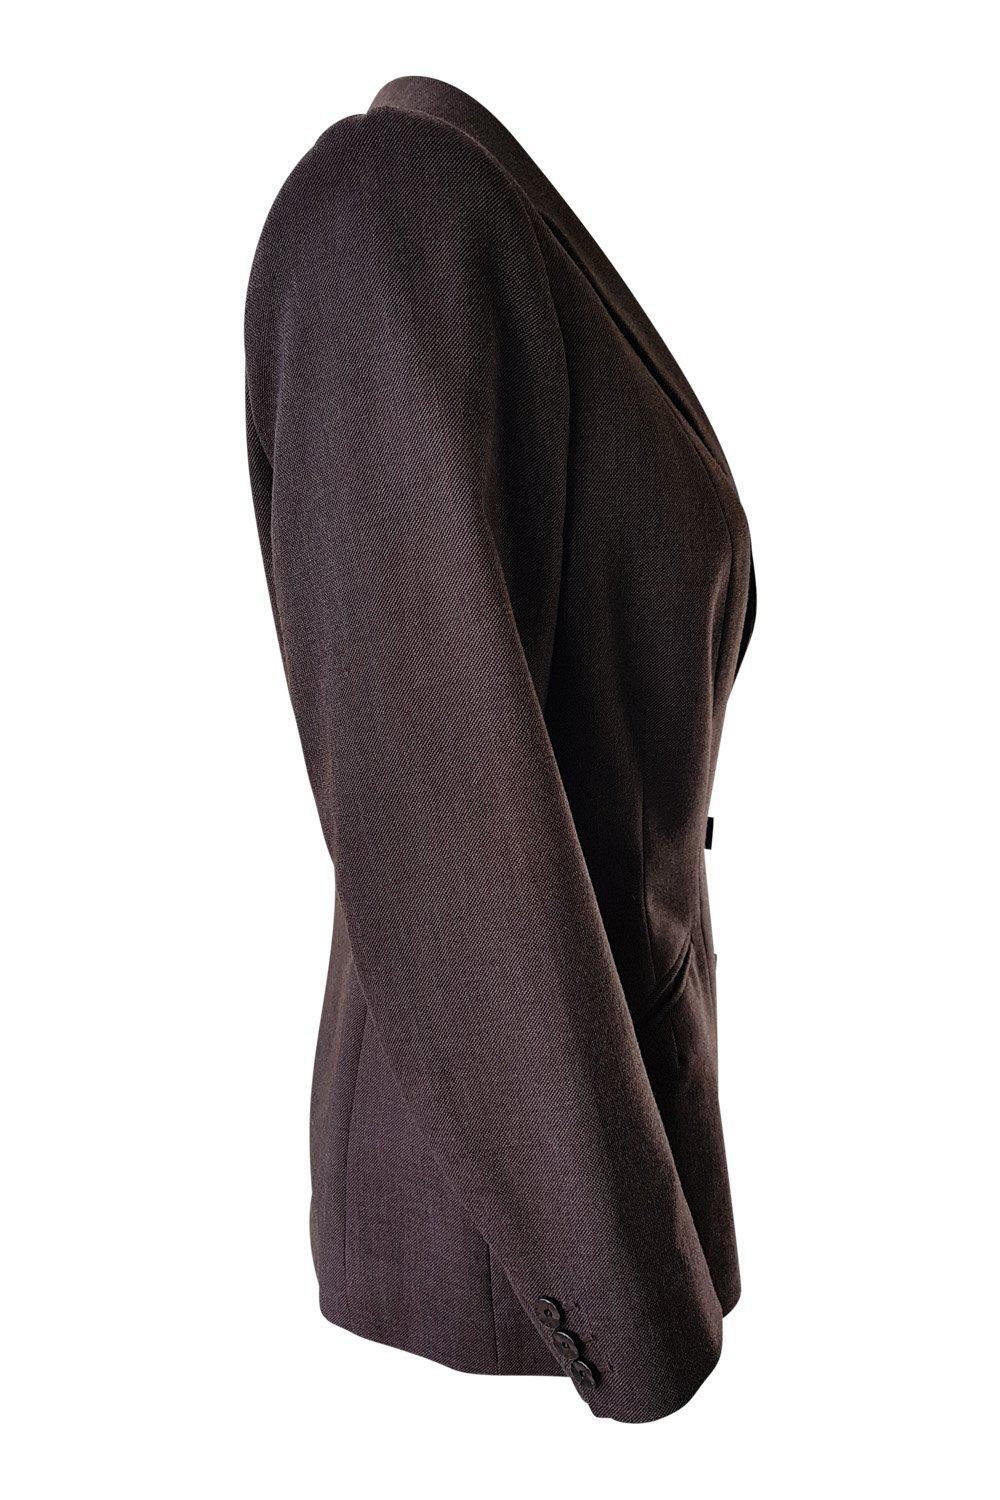 HECTOR POWE of Regent Street Vintage Brown Wool Jacket (10)-Hector Powe-The Freperie